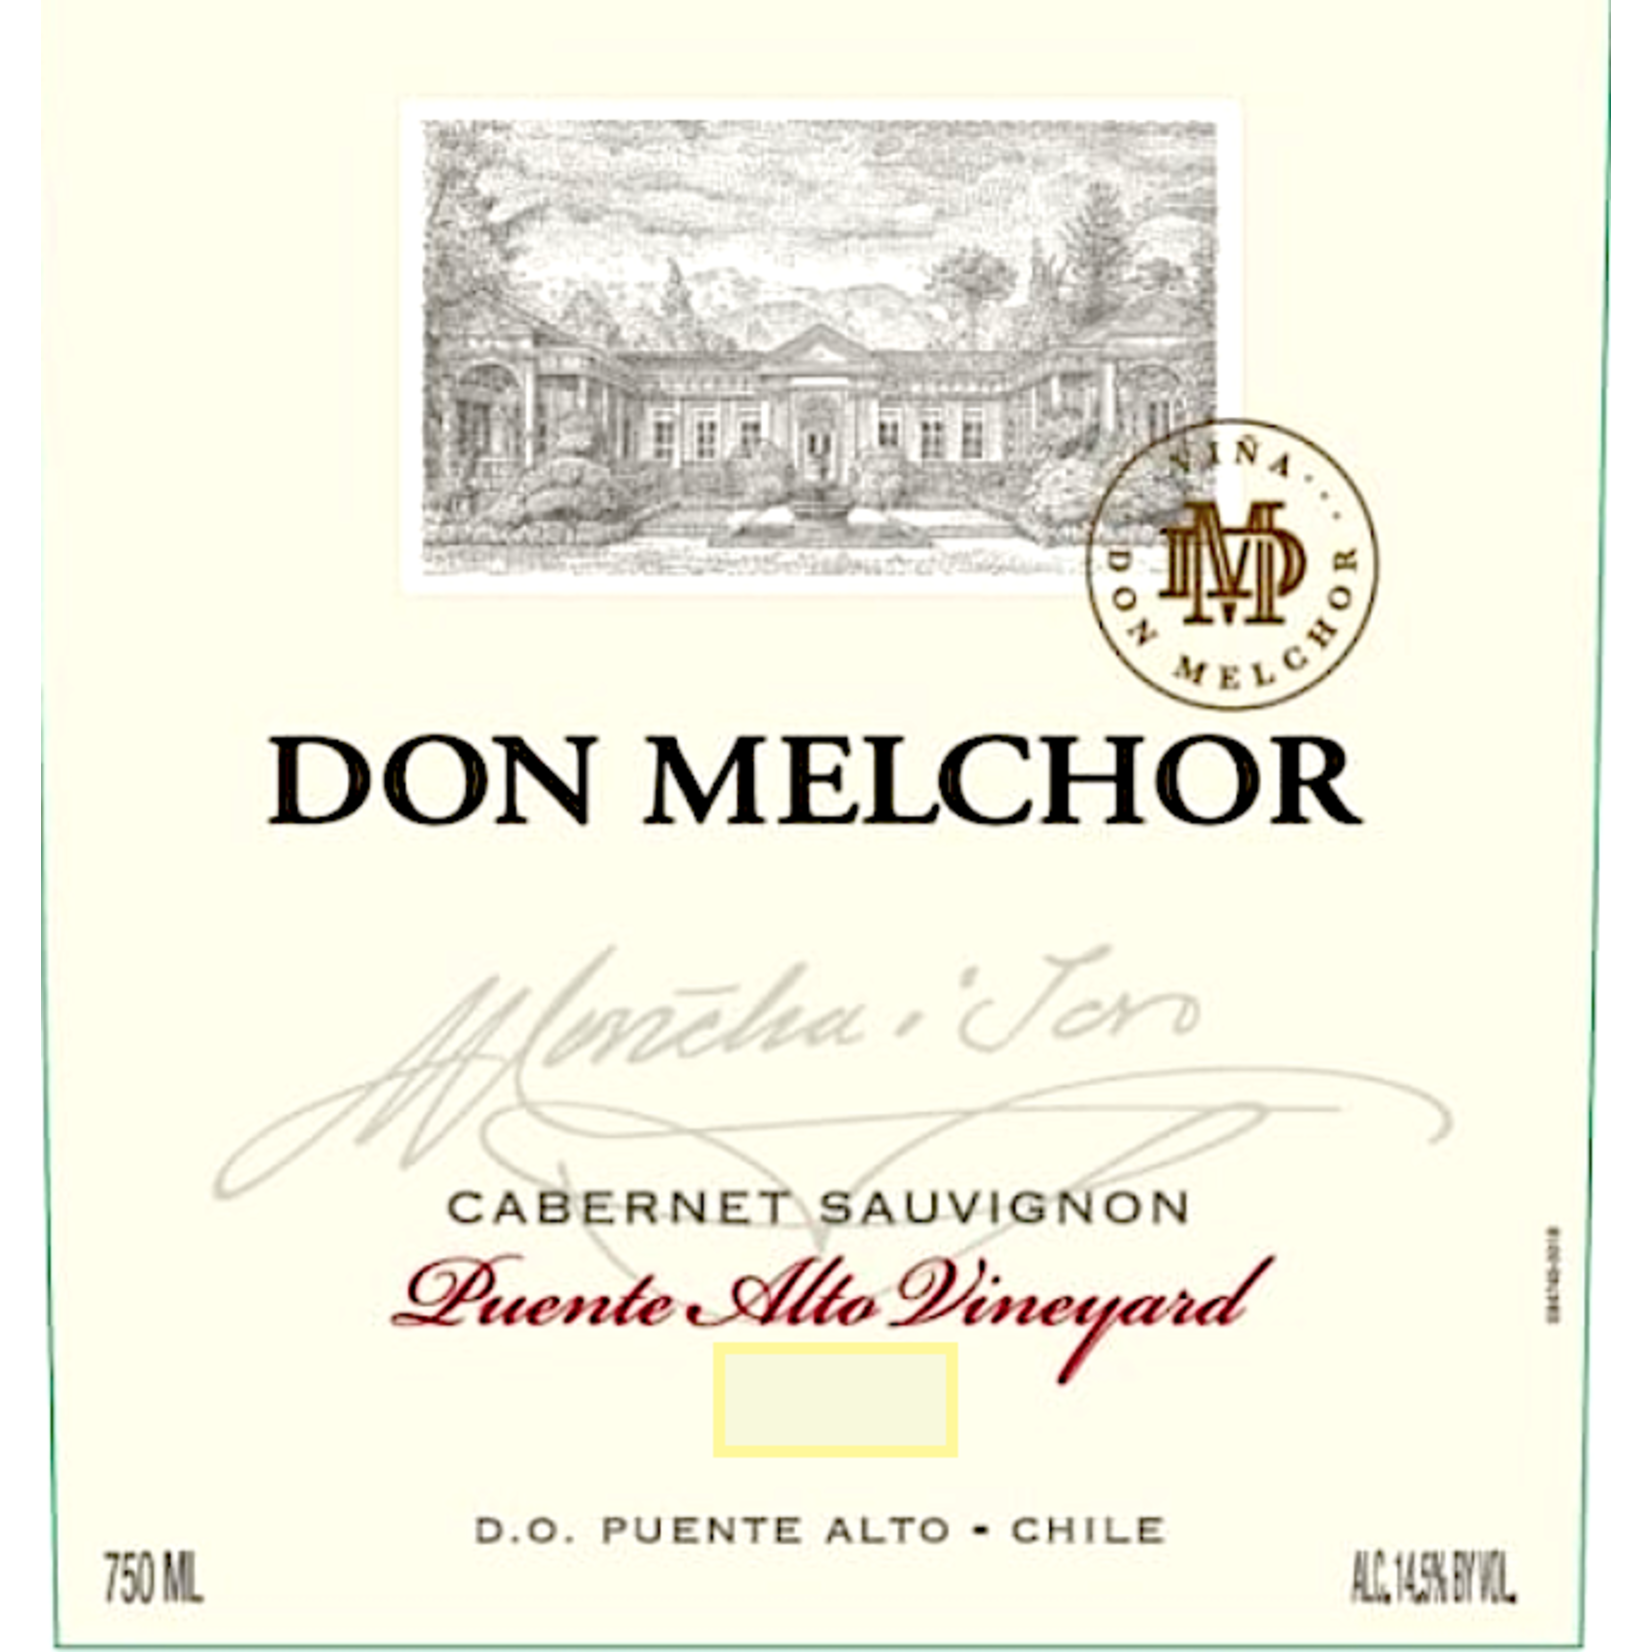 Vina Don Melchor SpA Don Melchor Cabernet Sauvignon 2019 Chile